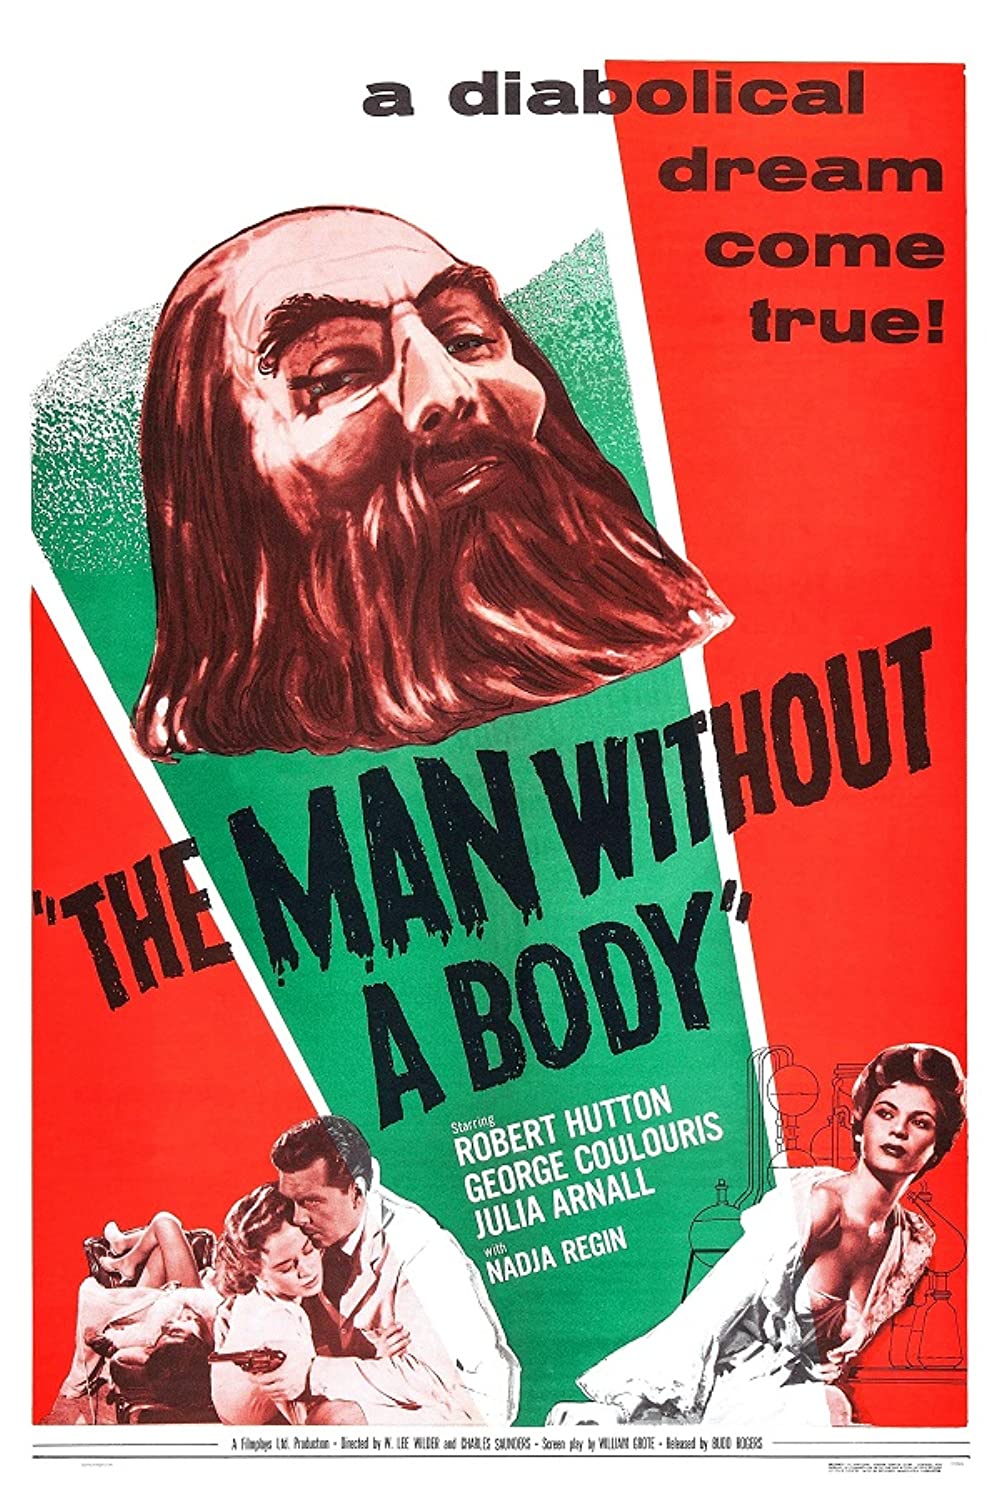 Filmbeschreibung zu Der Mann ohne Körper